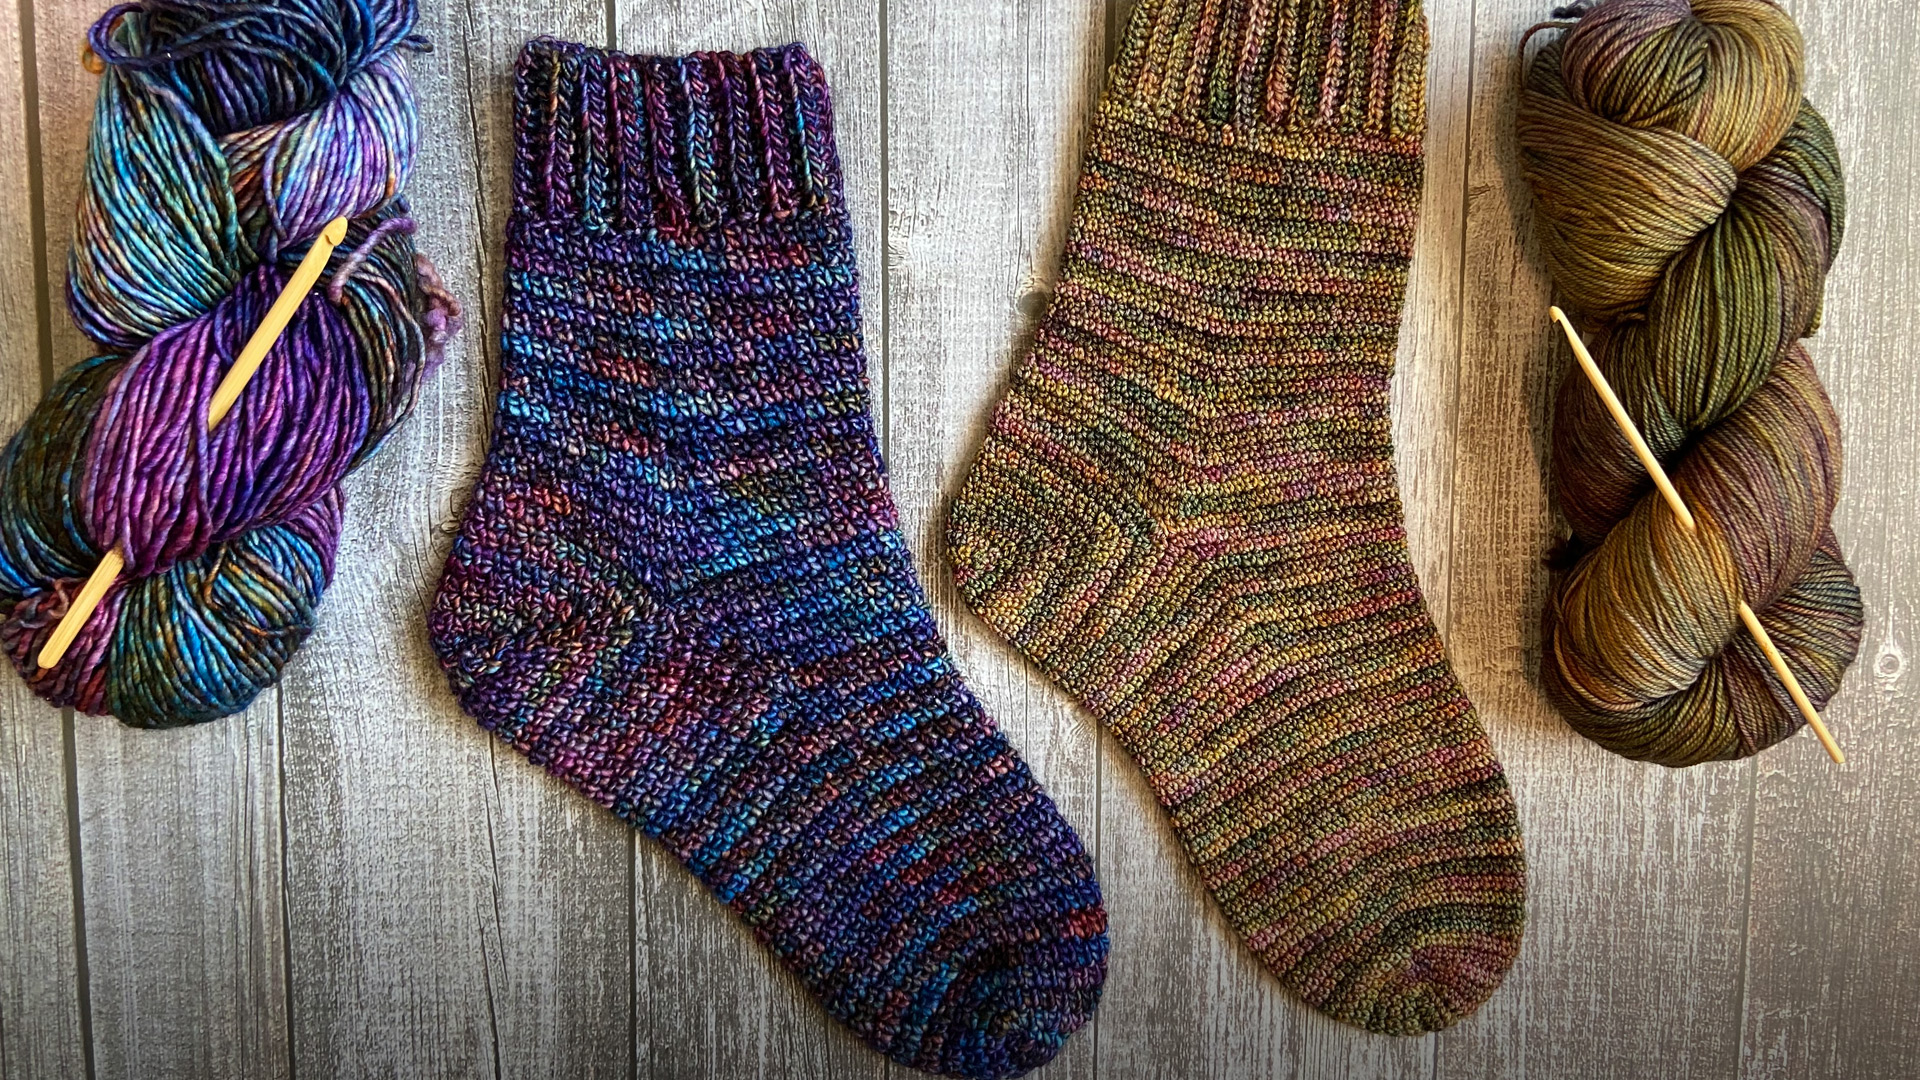 Toe Up Crochet Socks - Tea Leaves - free crochet pattern